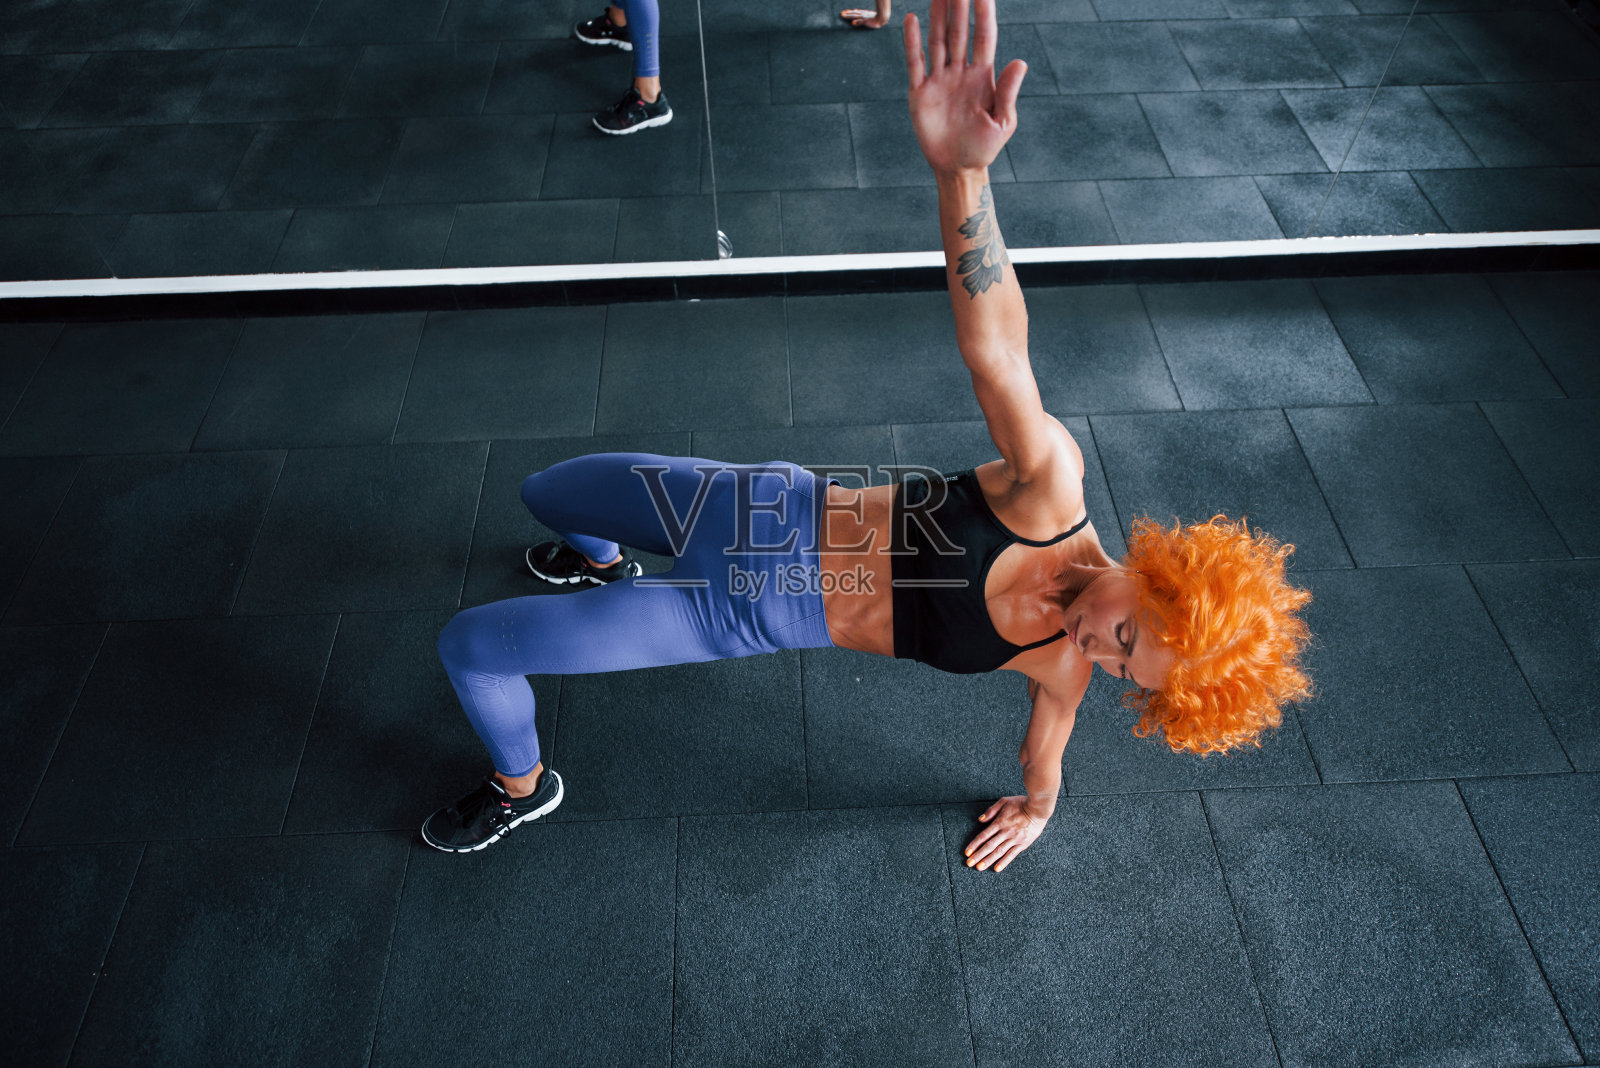 前视图。喜欢运动的红发女孩白天去健身房健身。肌肉发达的身体类型照片摄影图片